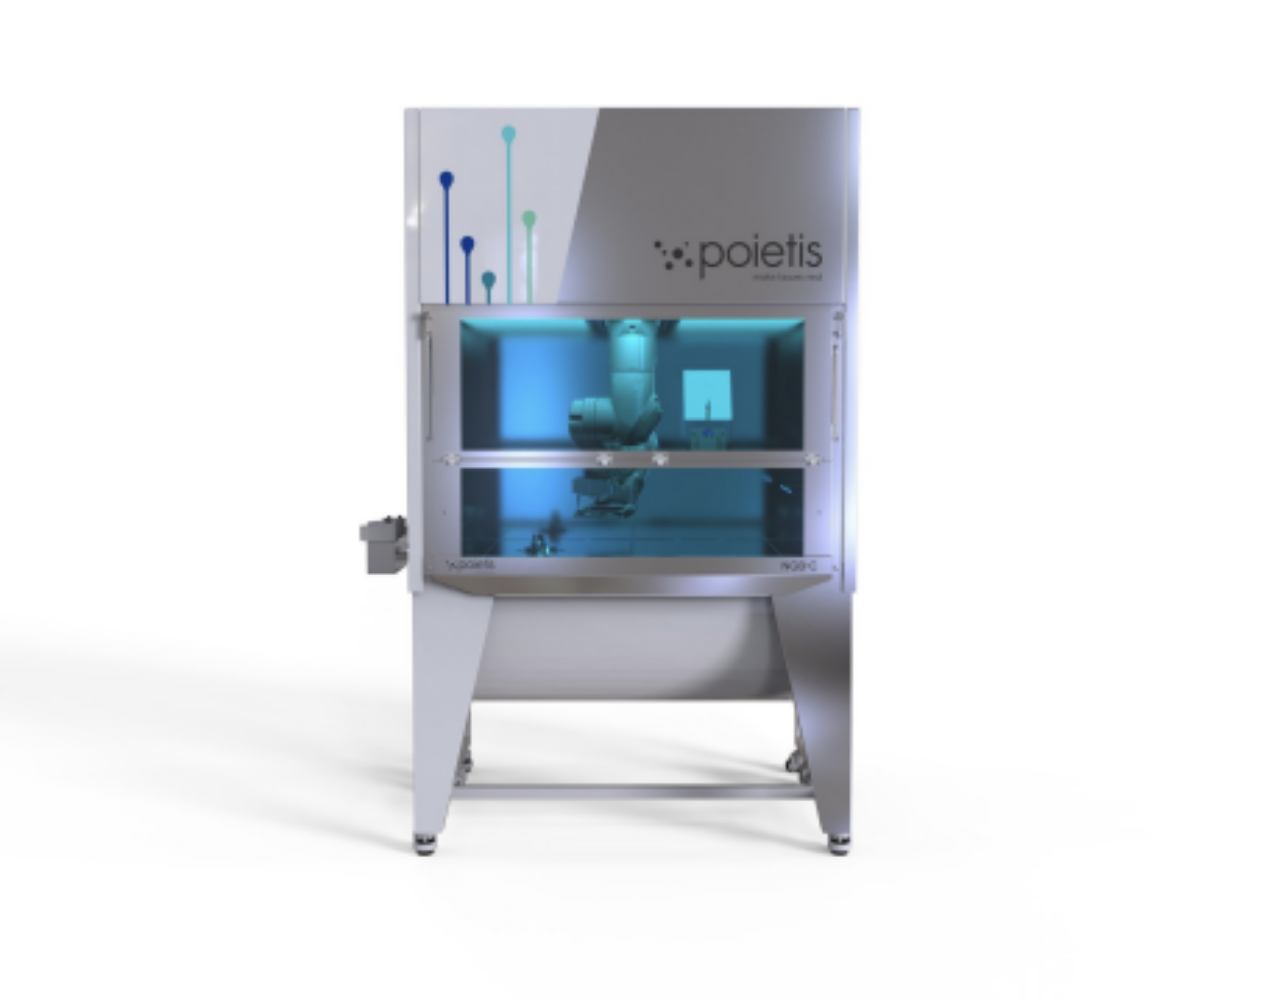 Poietis NGB bioprinting platform